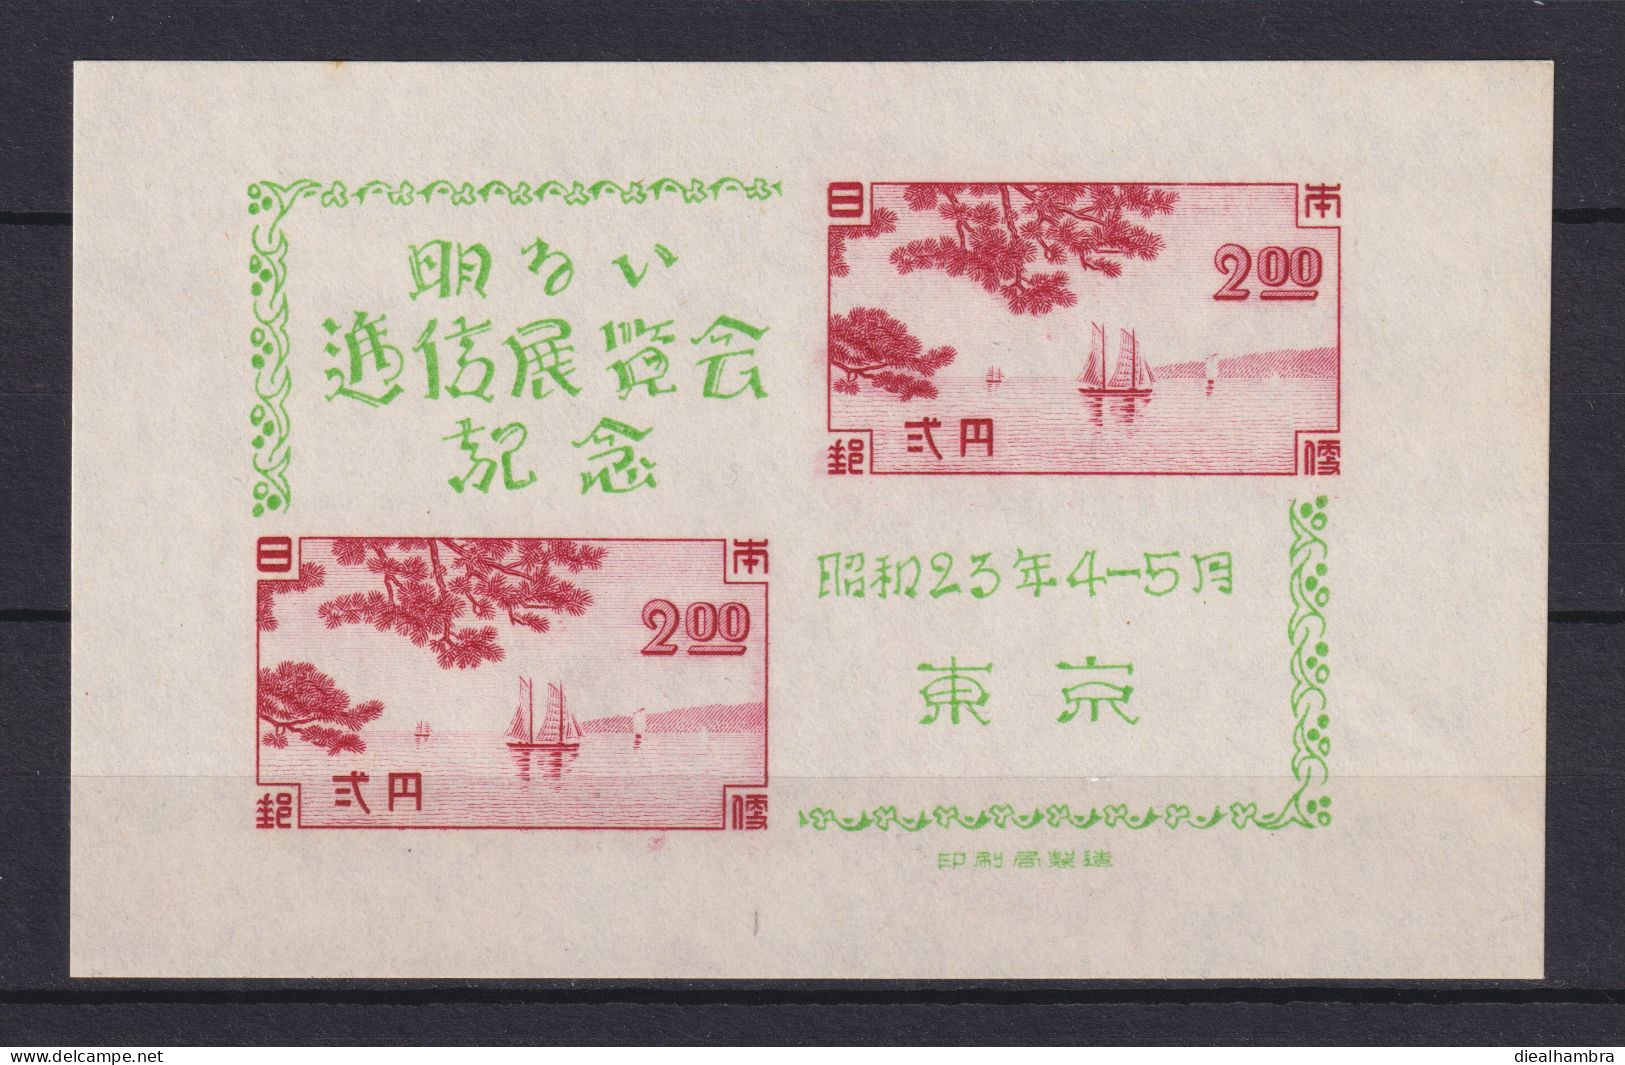 JAPAN NIPPON JAPON TOKYO COMMUNICATION EXHIBITION (BLOCK) 1948 / MNH / B 20 - Blocs-feuillets